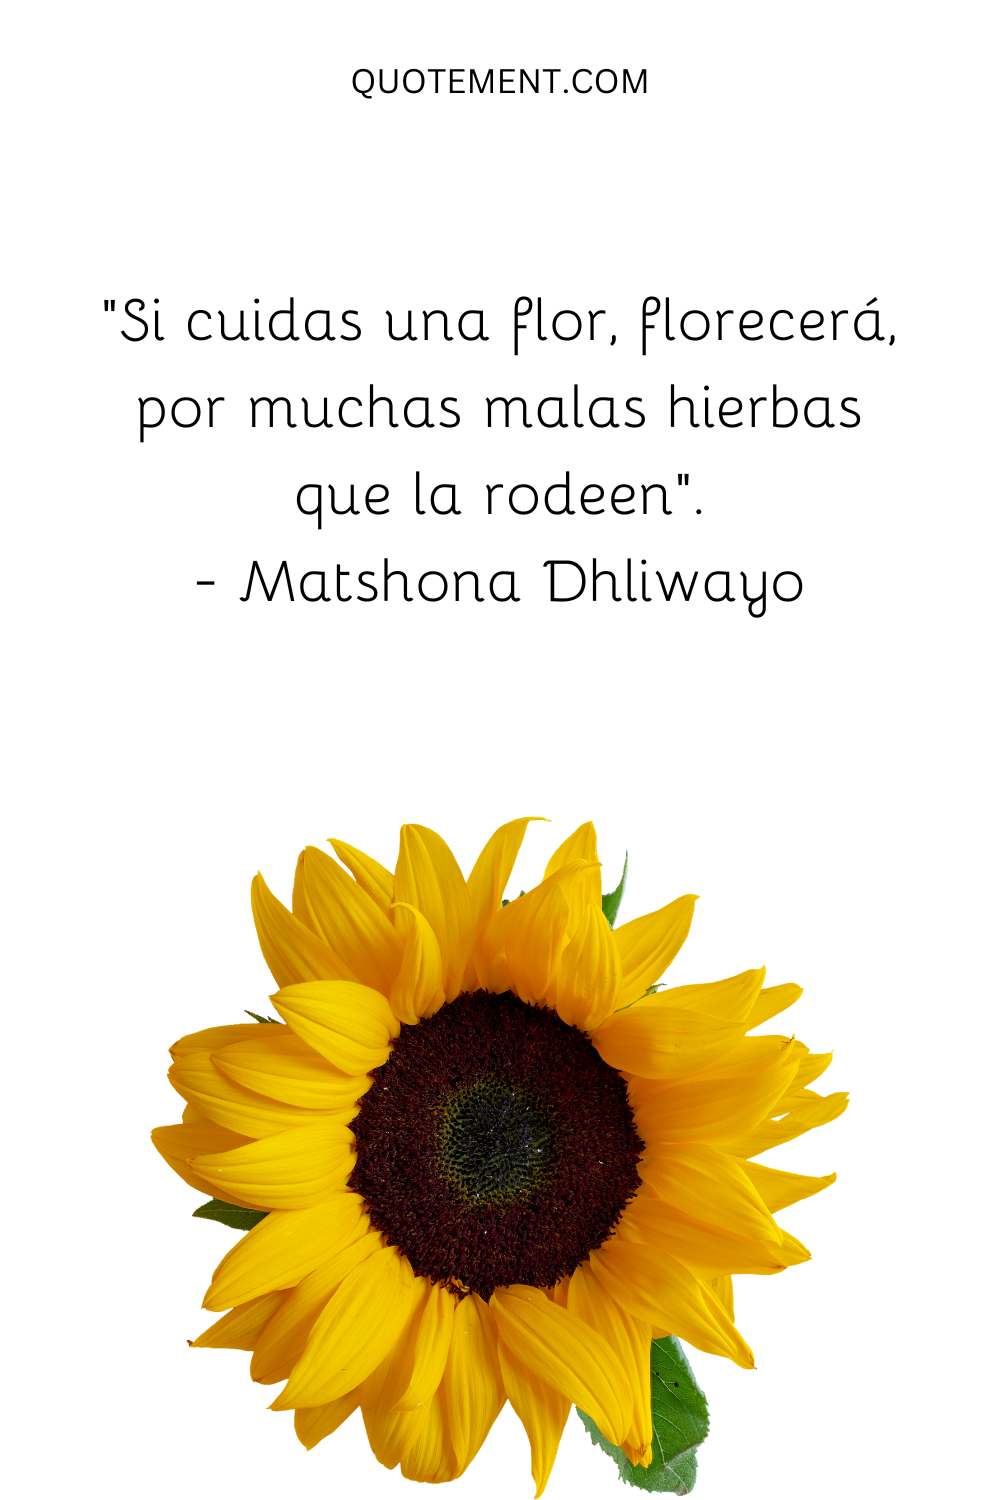 "Si cuidas una flor, florecerá, por mucha mala hierba que la rodee". - Matshona Dhliwayo